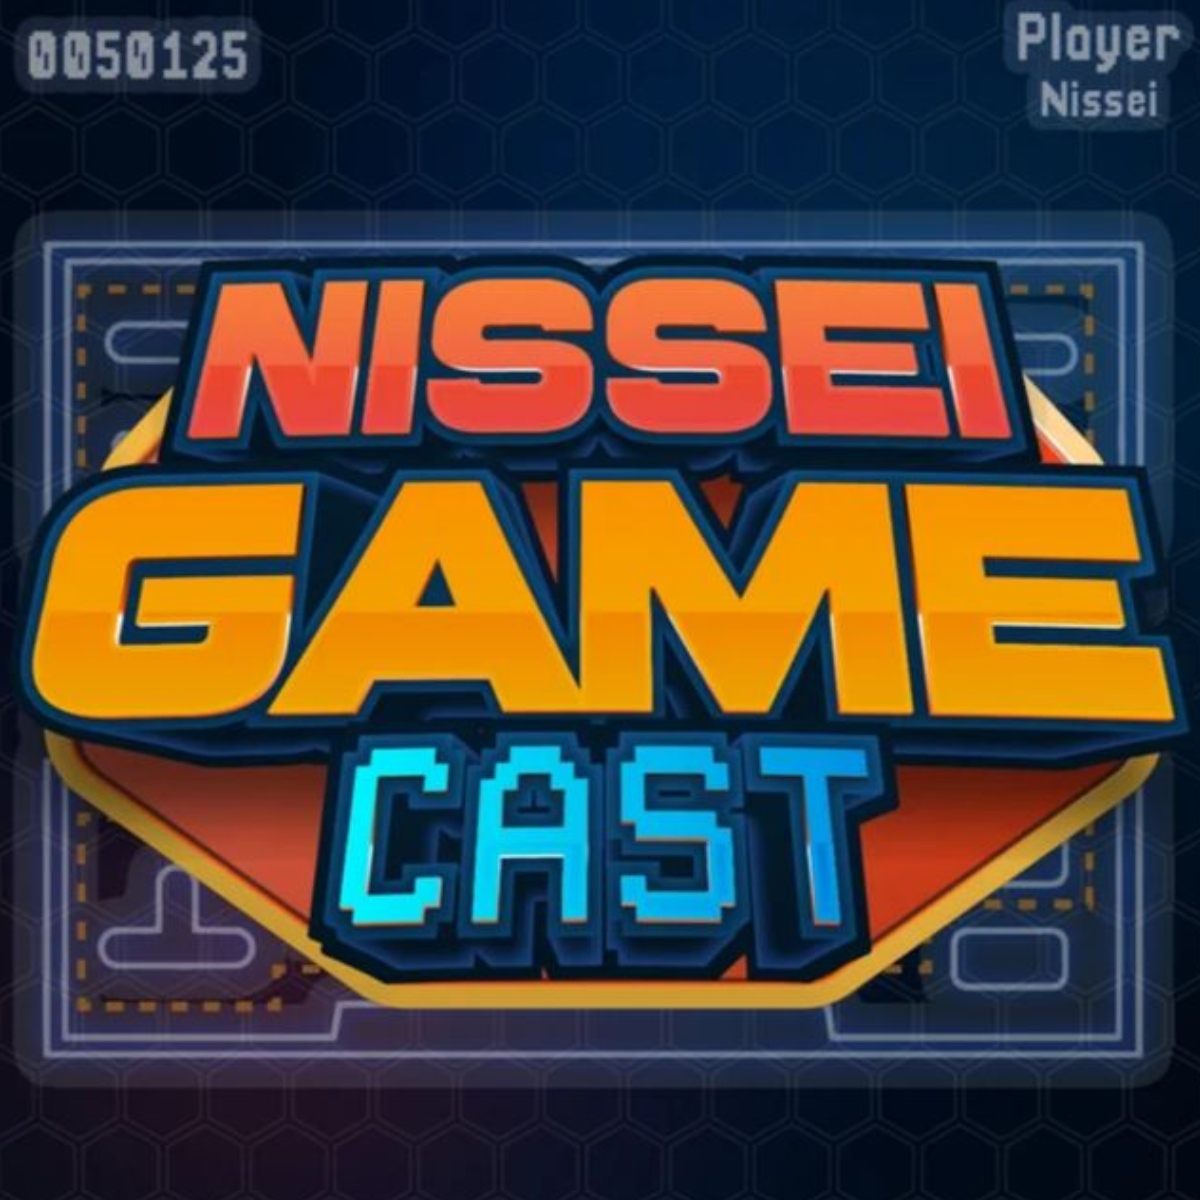  nissei game cast episodio 2 